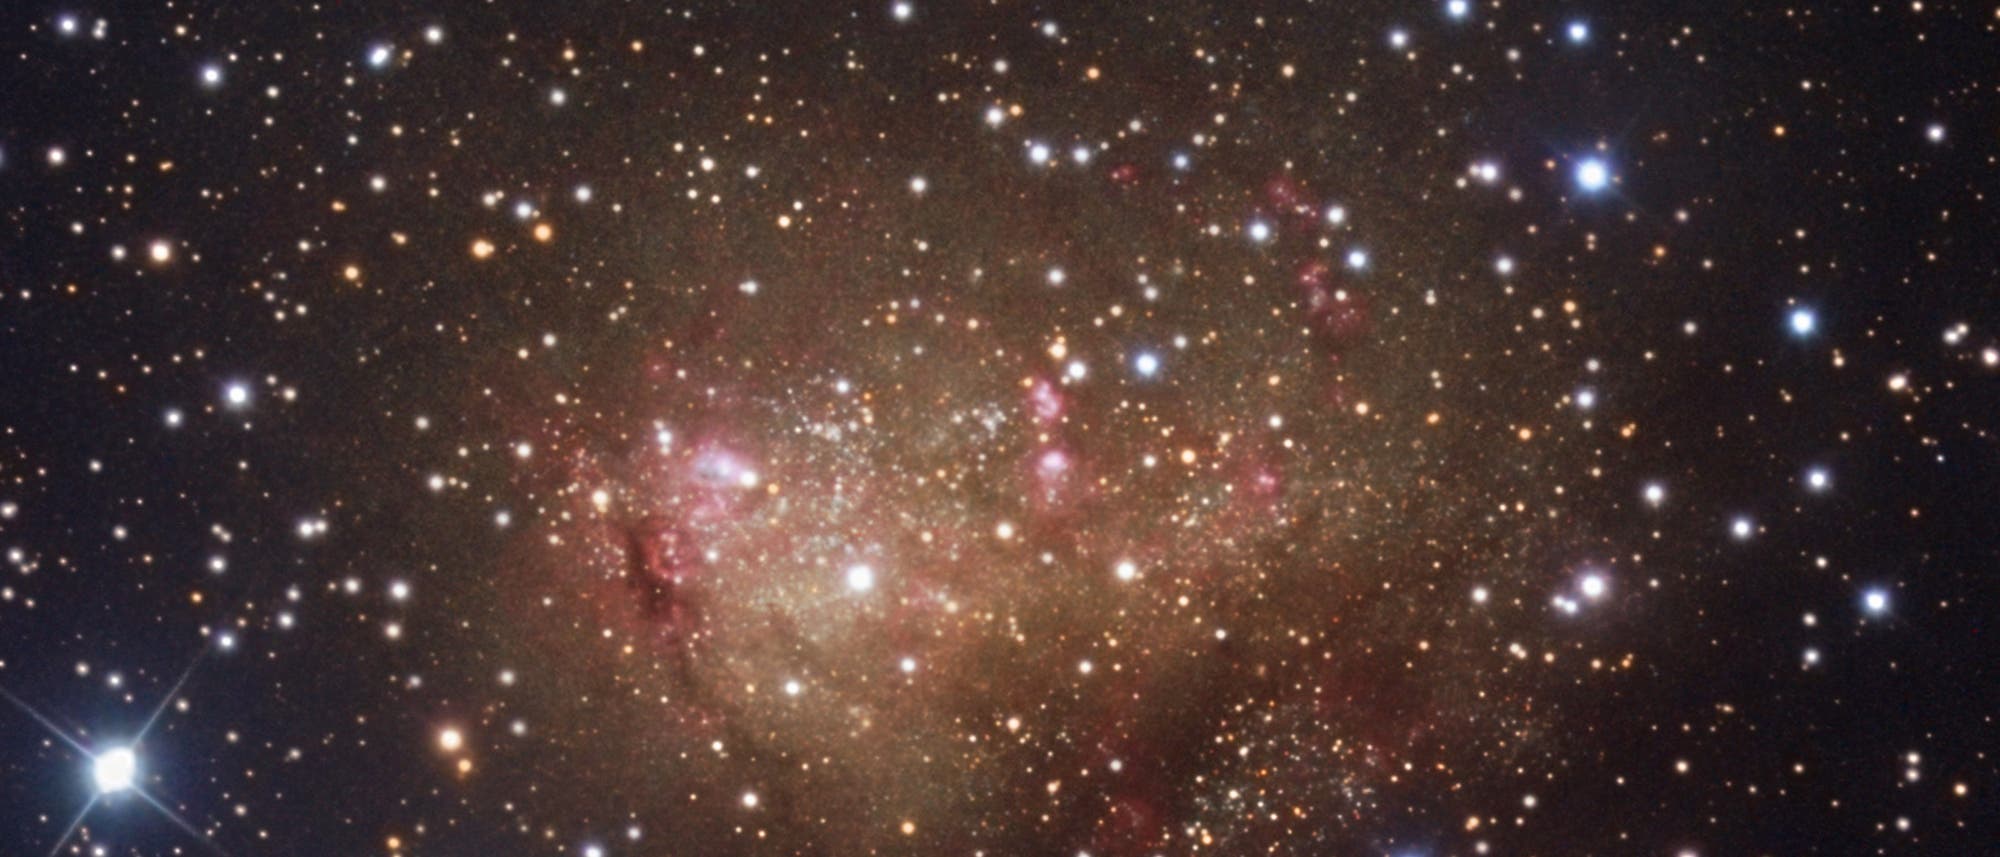 irreguläre Zwerggalaxie IC10 im Sternbild Kassiopeia